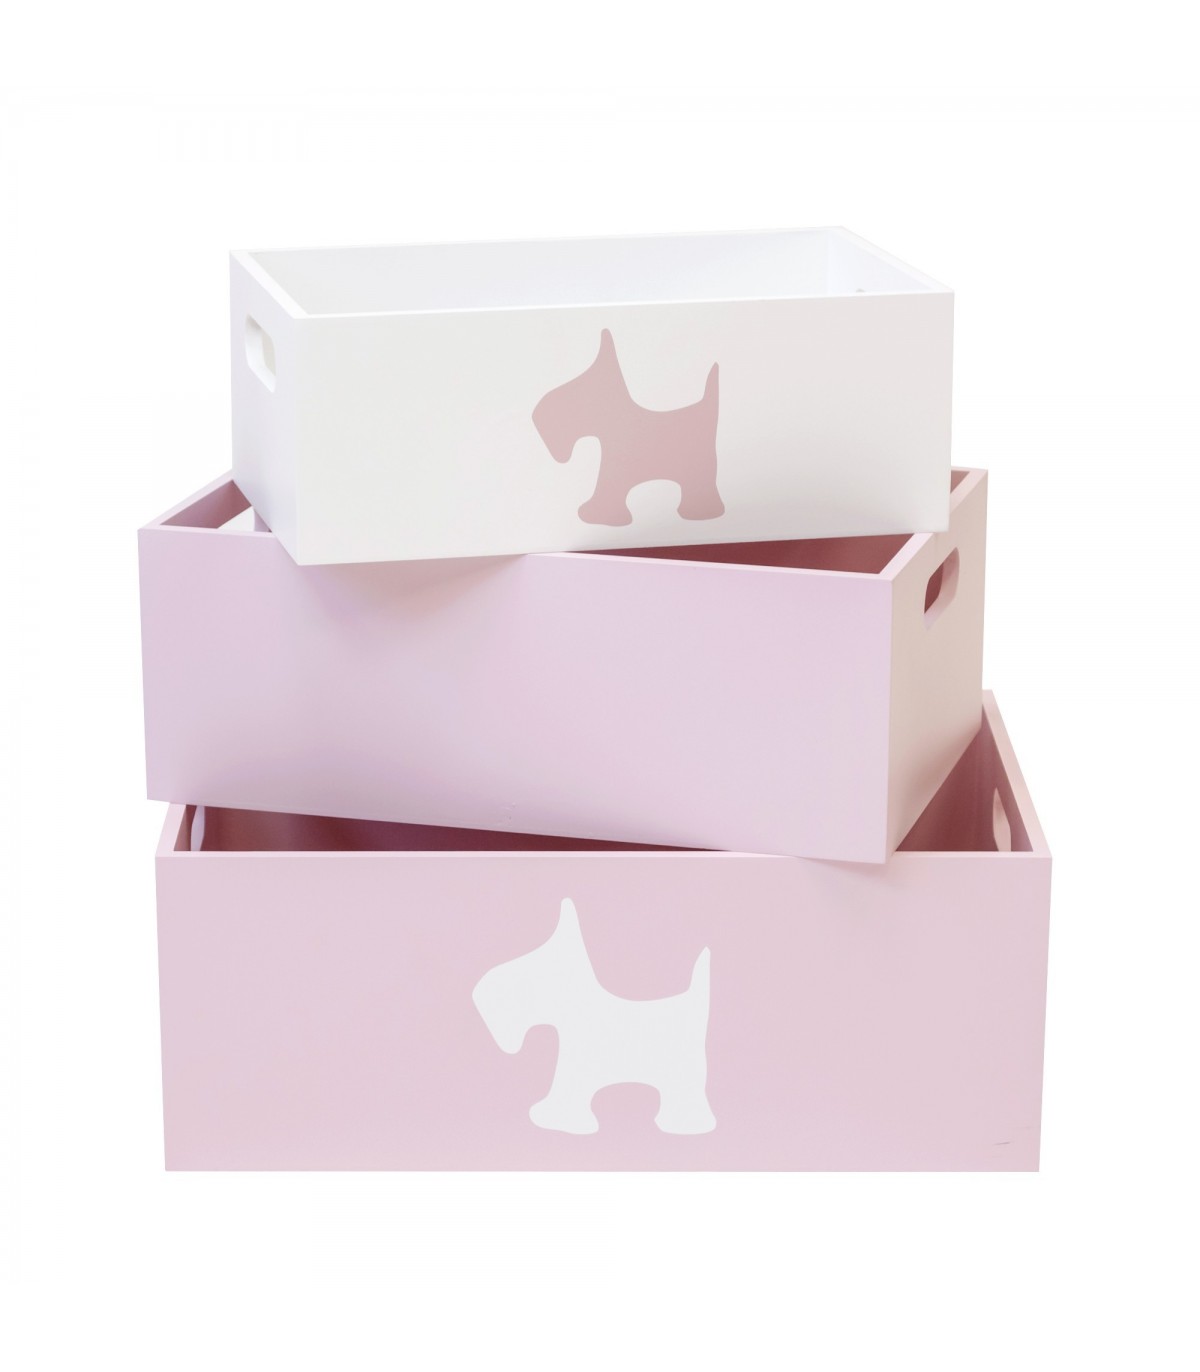 Set 3 cajas de madera decorativas rosas - MU01401 - Cajas y cestos